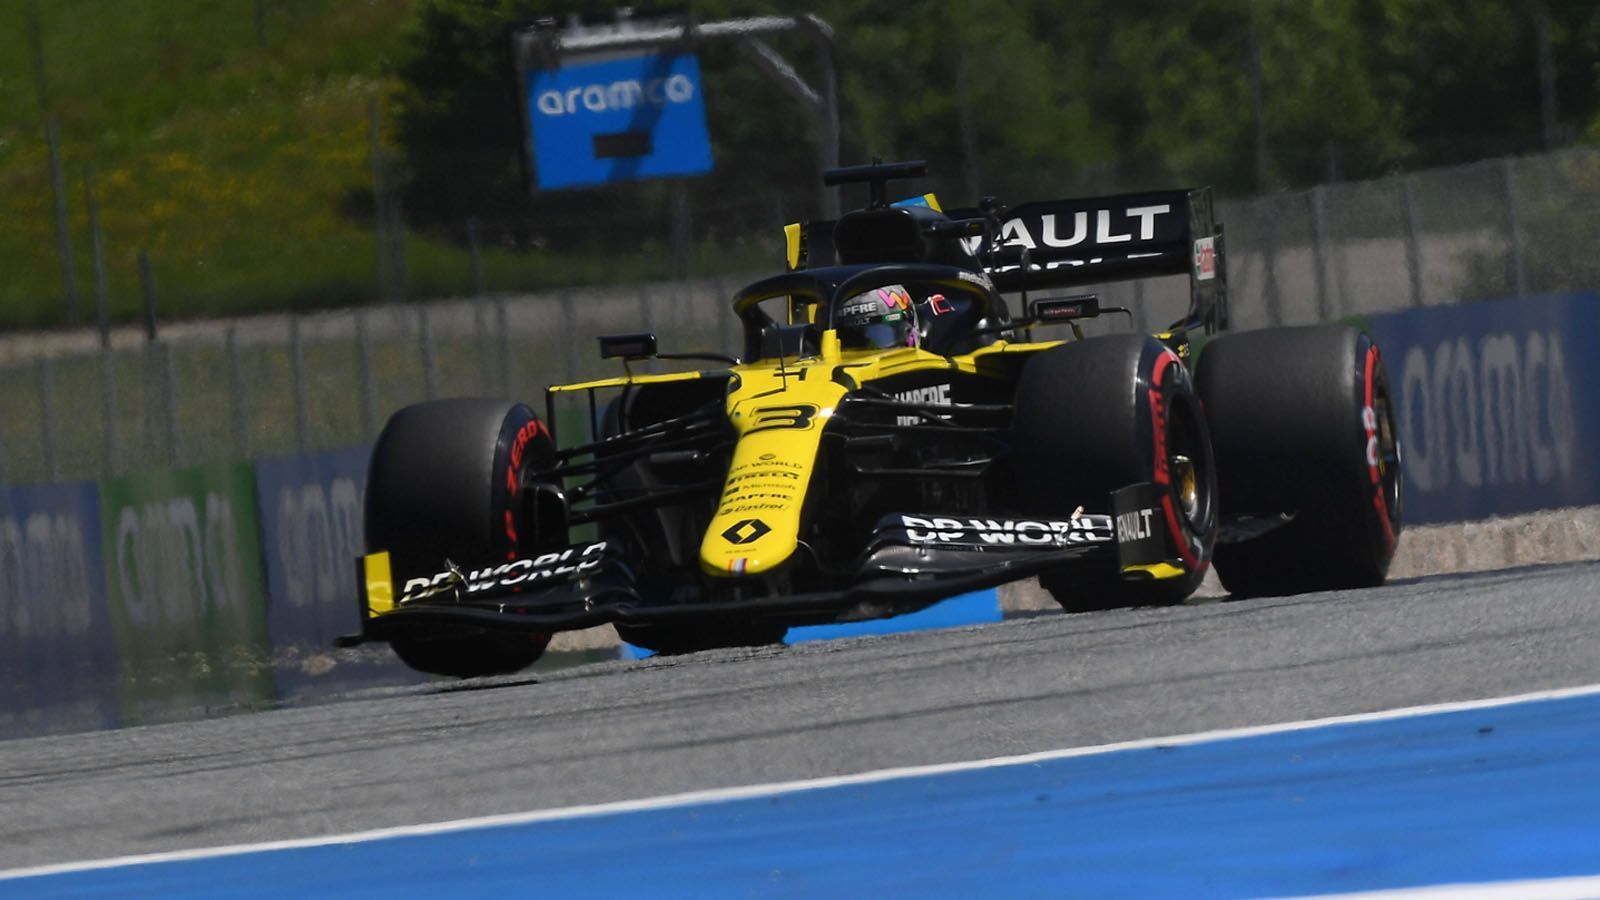 
                <strong>Trotz Enttäuschung: Renault-Piloten bleiben zuversichtlich </strong><br>
                Renault sorgte in dieser Woche für Schlagzeilen, indem die Rückkehr des zweimaligen Weltmeisters Fernando Alonso zur Saison 2021 bekanntgegeben wurde. Sportlich lief der Auftakt weniger erfolgreich. Daniel Ricciardo musste aufgrund von Kühlungsproblemen nach 17 Runden aufgeben, Teamkollege Esteban Ocon belegte Platz 8. Ricciardo ist trotz seines Ausfalls zuversichtlich: "Ich glaube, dass die Mechaniker nah dran sind, die Ursache zu finden. Und wie ich es verstehe, kann das in dem Zeitrahmen behoben werden." Auch Ocon glaubt an sein Fahrzeug: "Unsere Pace ist eigentlich deutlich stärker."
              